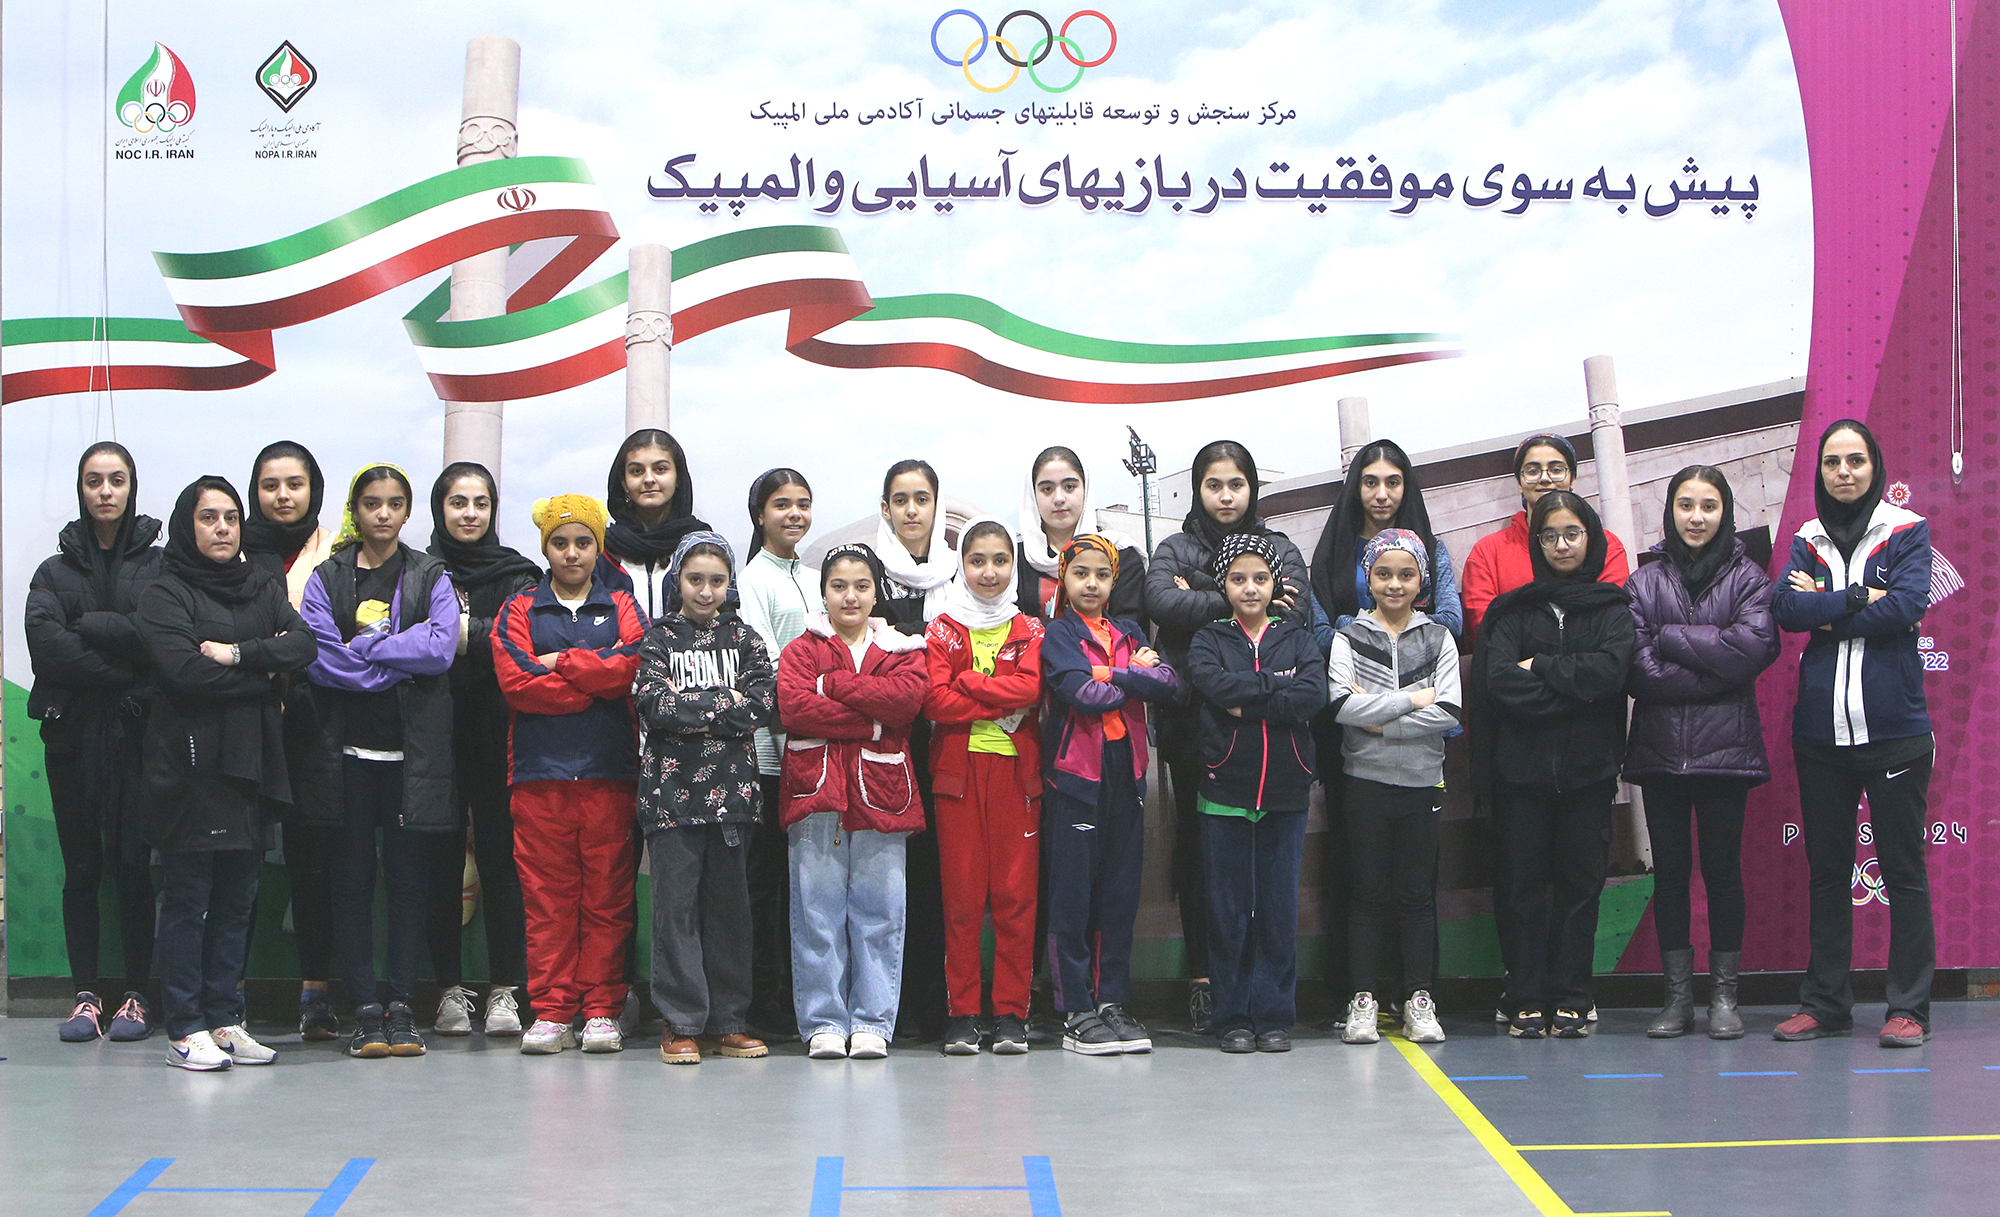 دختران اسکواش باز در آزمون های آمادگی جسمانی آکادمی ملی المپیک